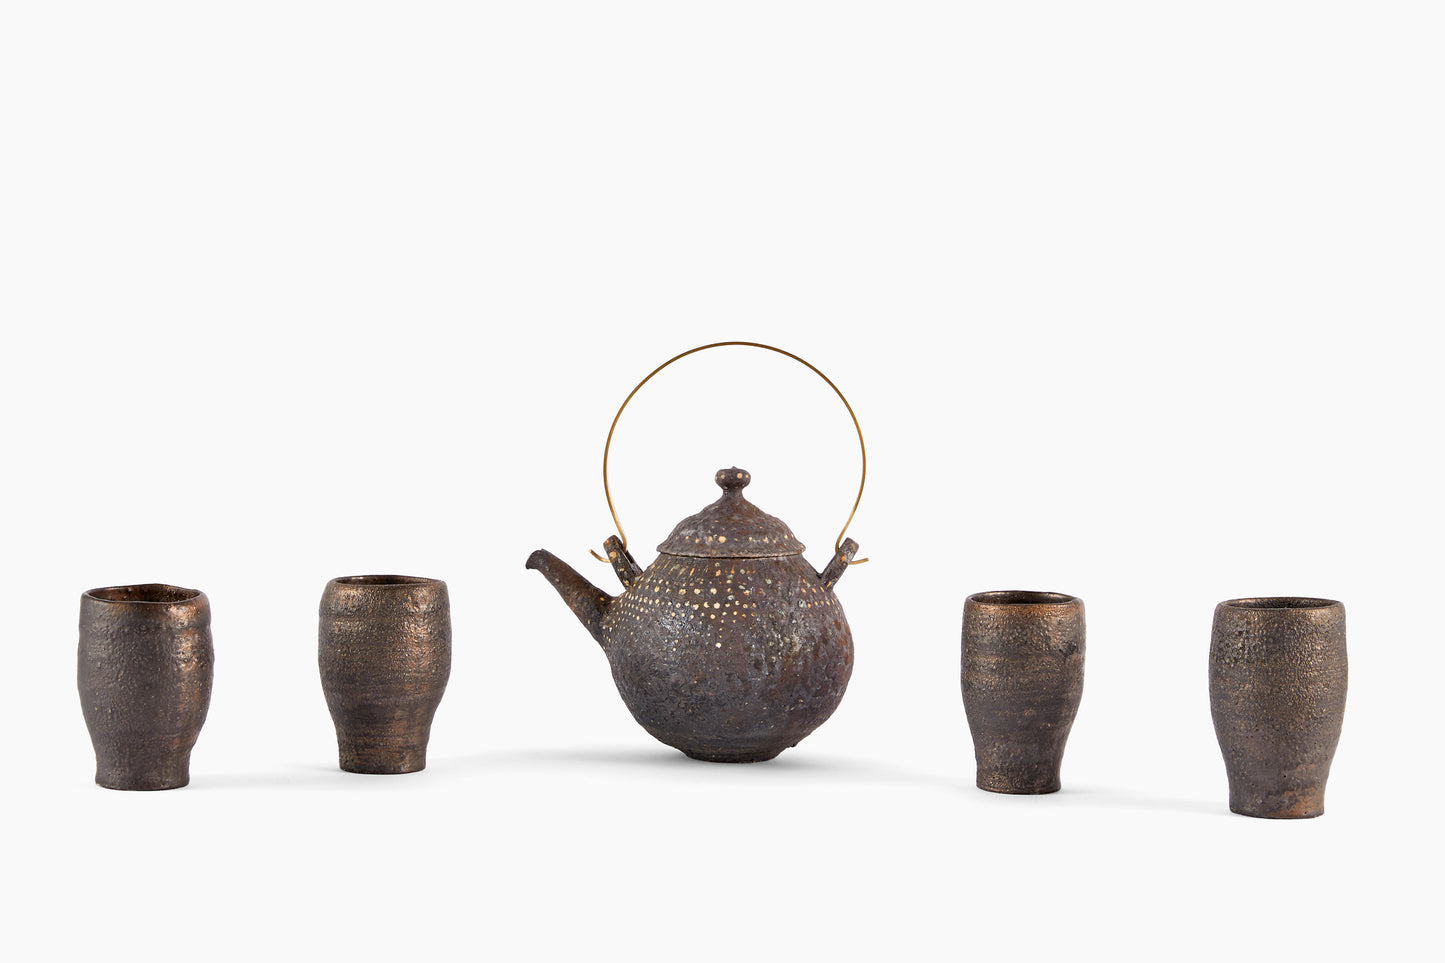 Masahiko Yamamoto Teapot Set